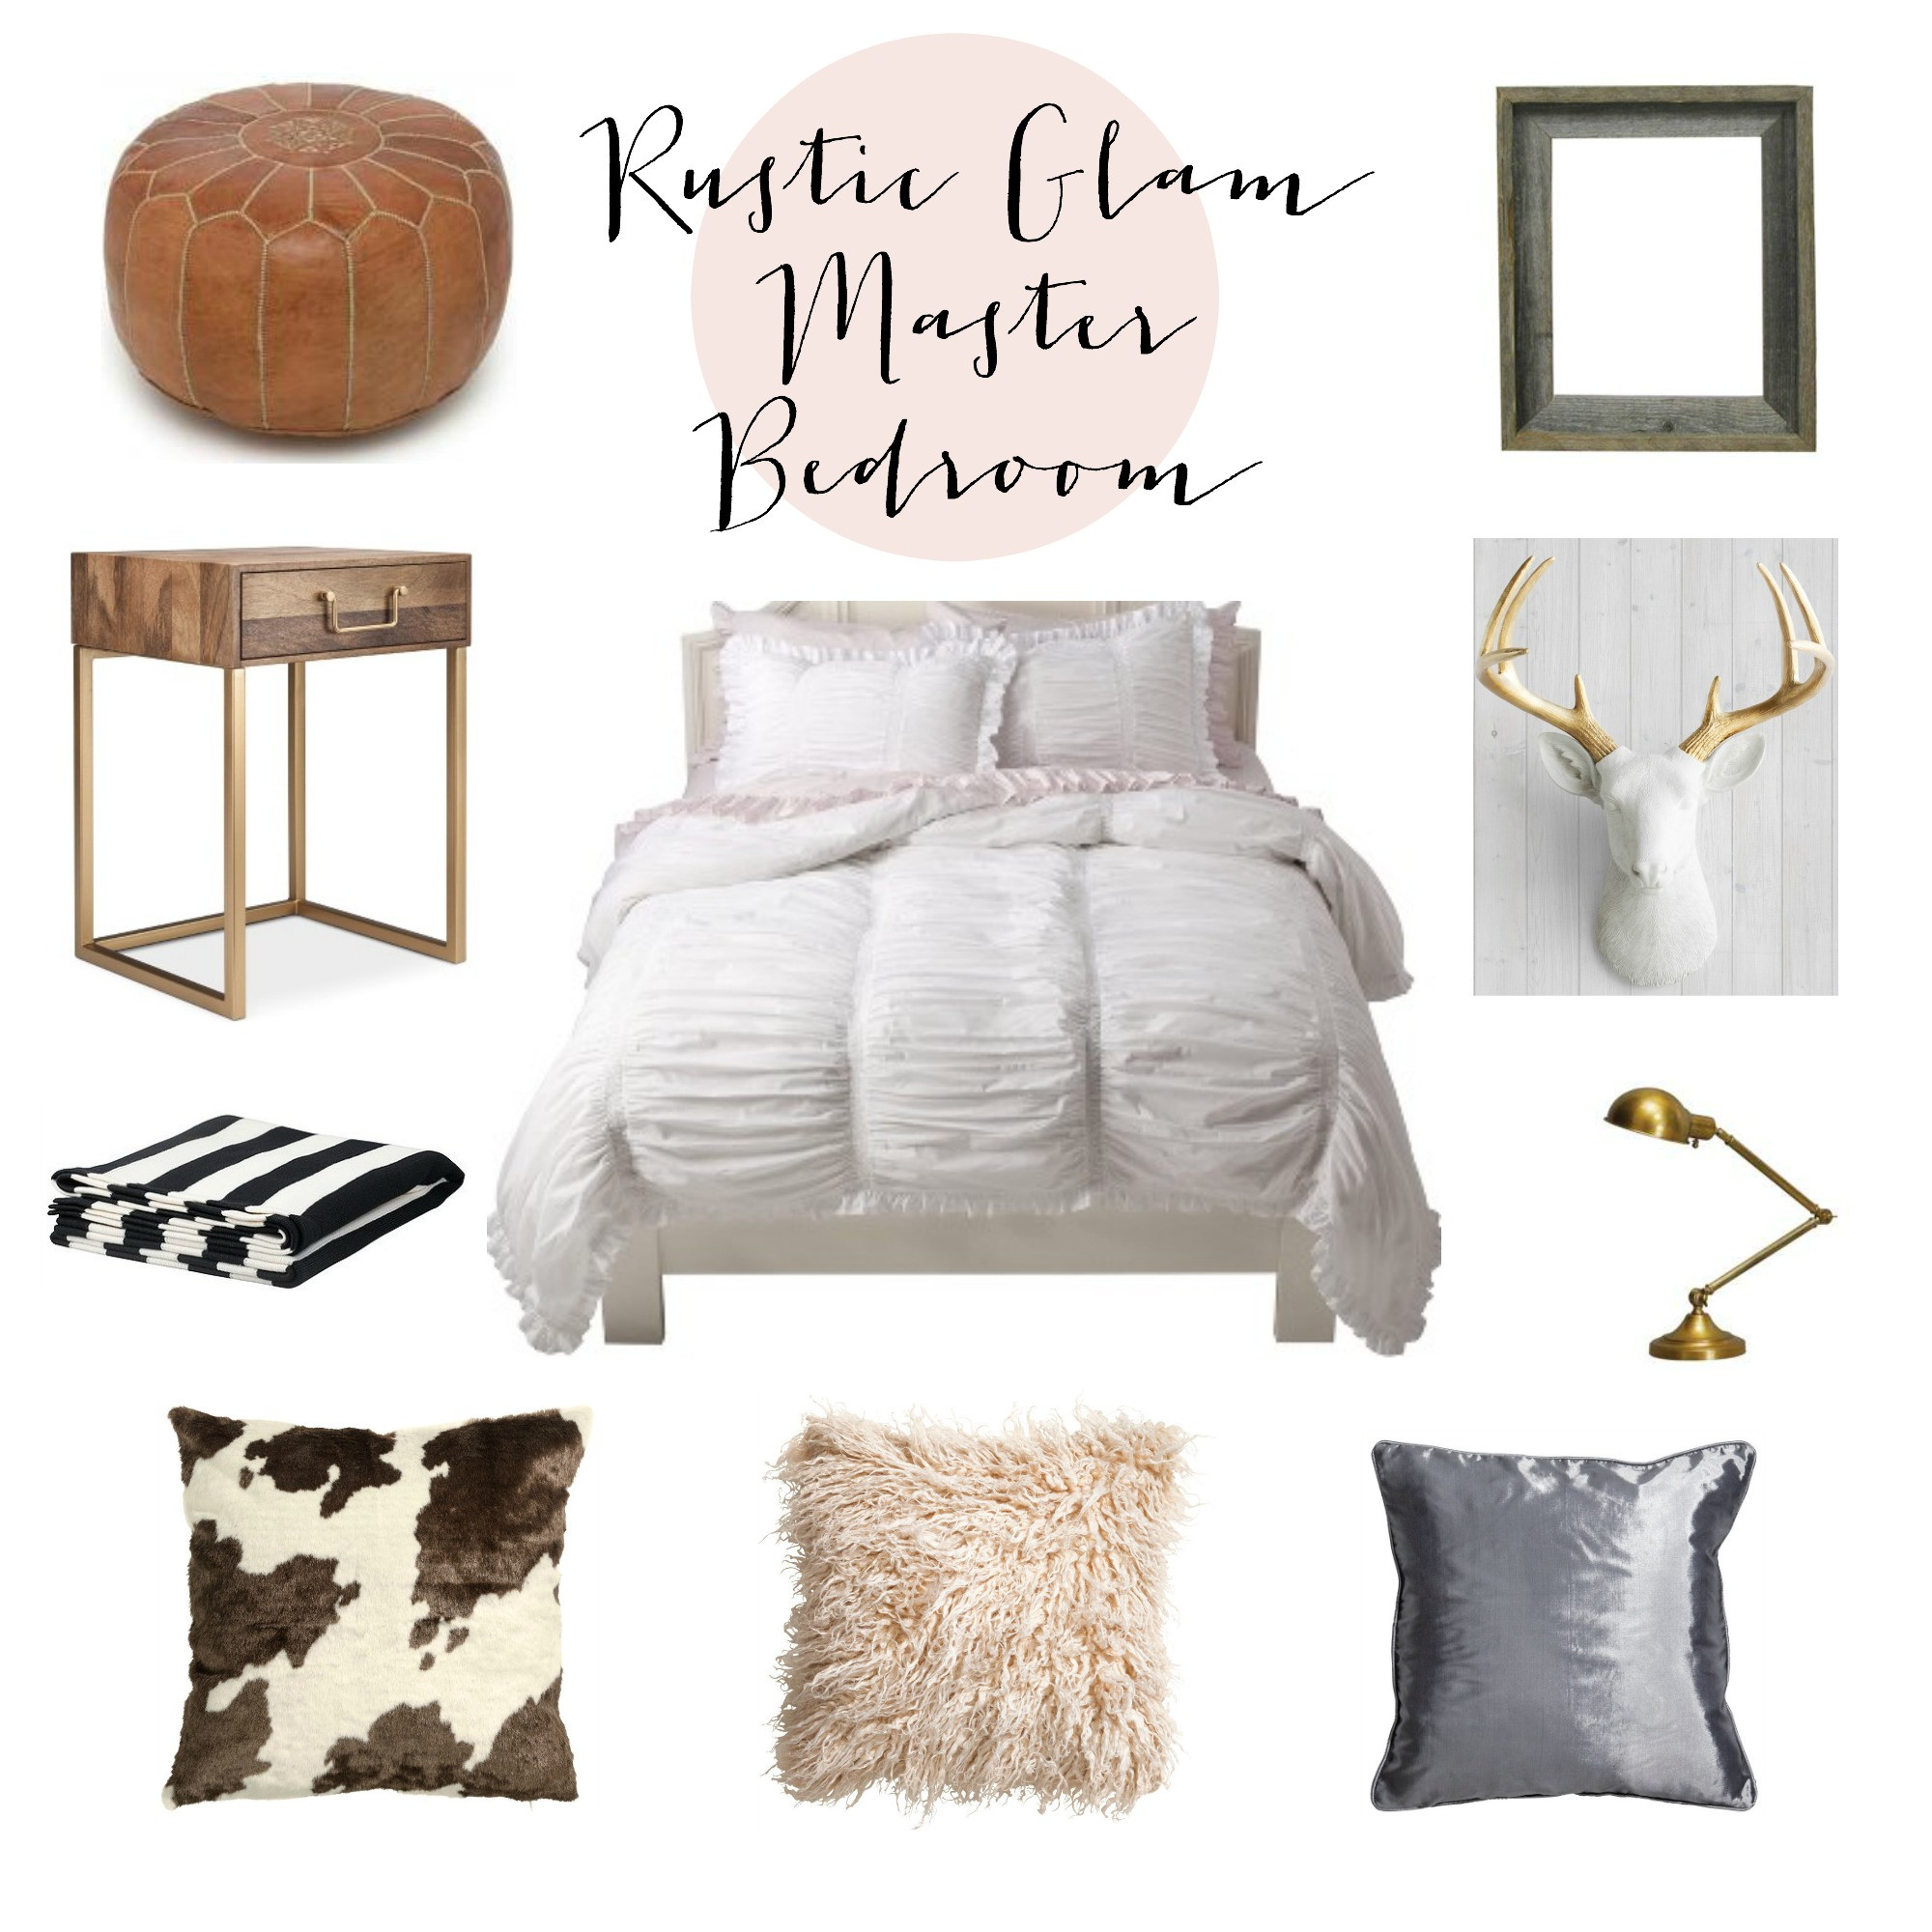 Rustic Glam Bedroom
 Rustic Glam Master Bedroom Inspiration Lauren McBride